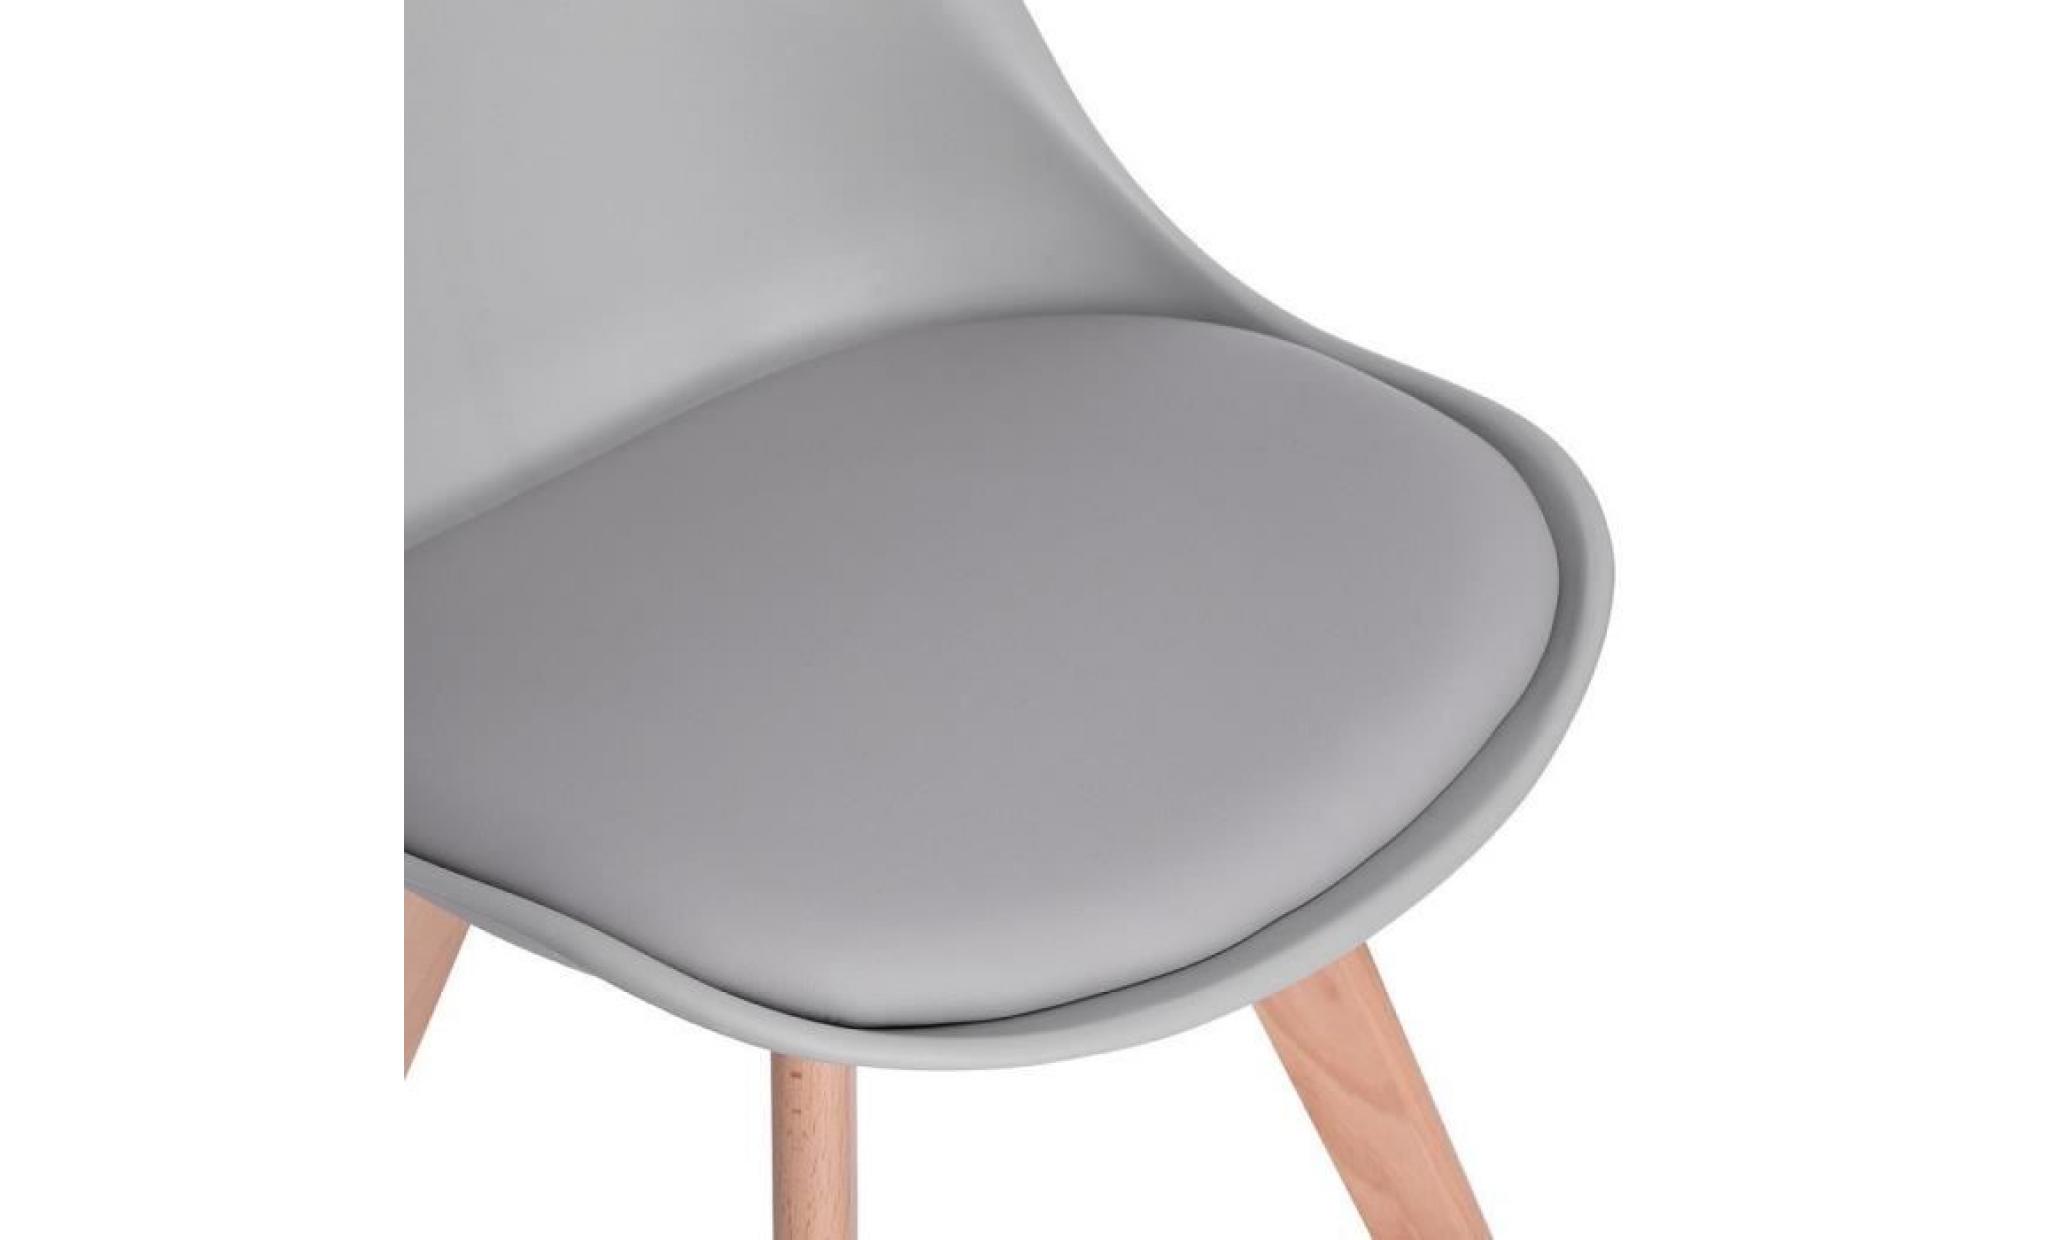 jkk lot de 6 chaises design contemporain nordique scandinave  tulipe chaises  pieds en bois de hêtre massif   gris clair pas cher